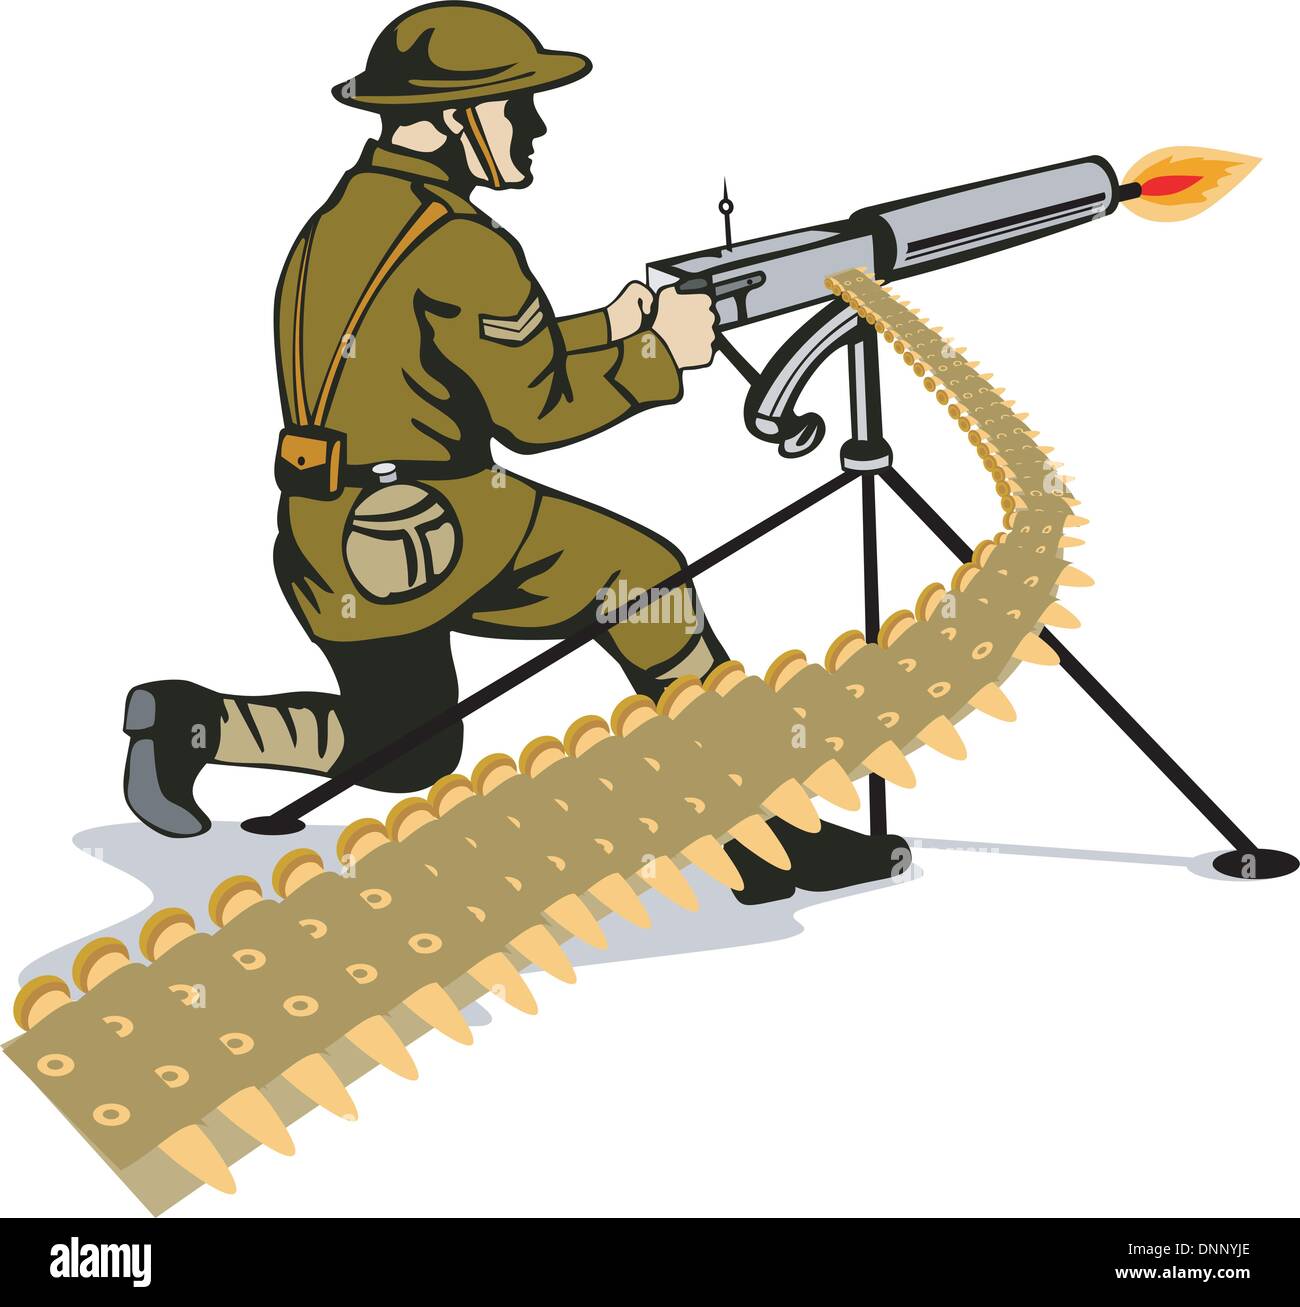 Darstellung des Soldaten mit dem Ziel Maschinengewehr schießen Satz auf isolierten weißen Hintergrund im retro-Stil gemacht. Stock Vektor